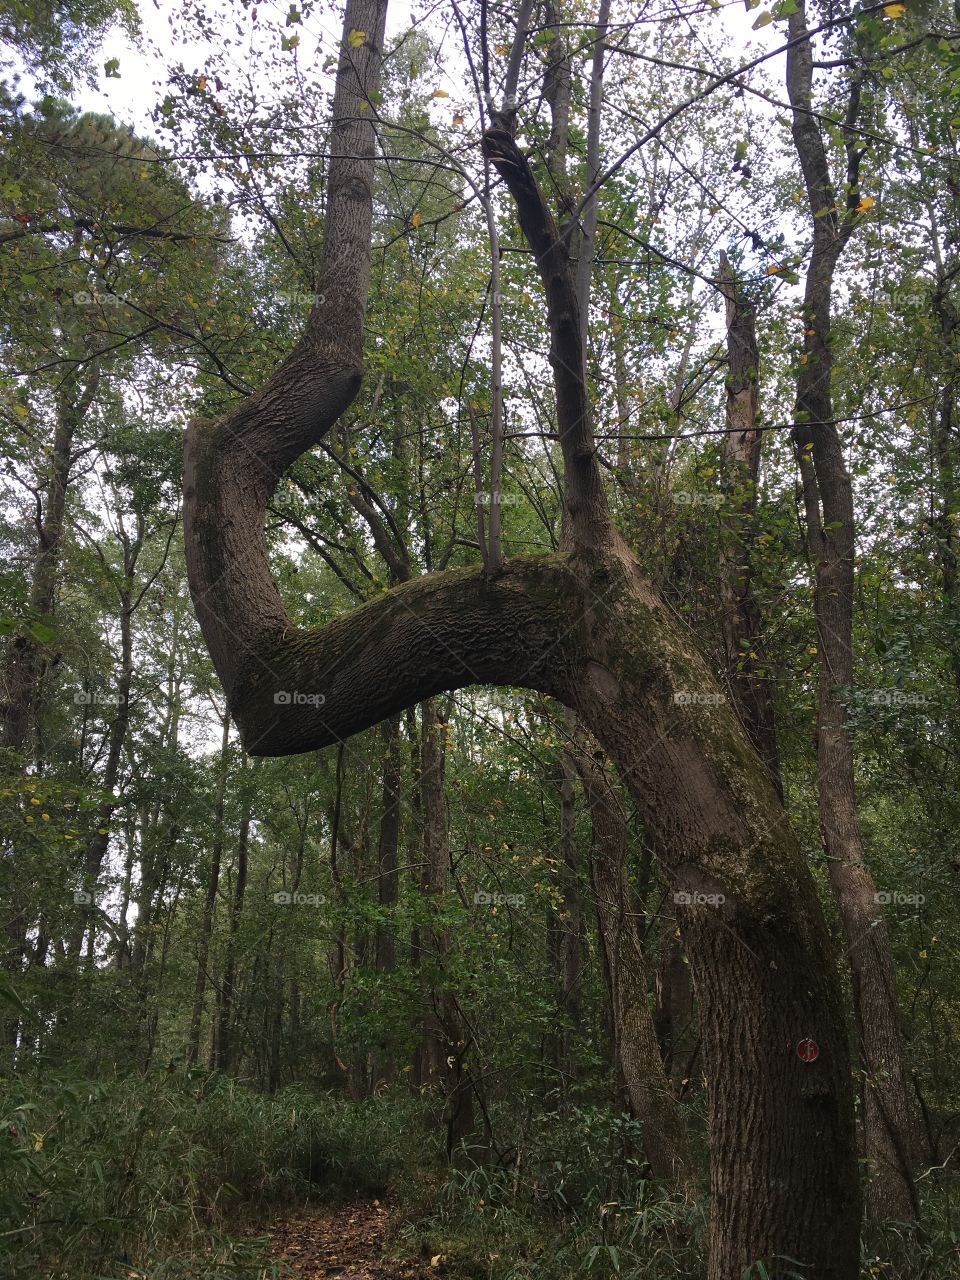 A nice sturdy crooked tree